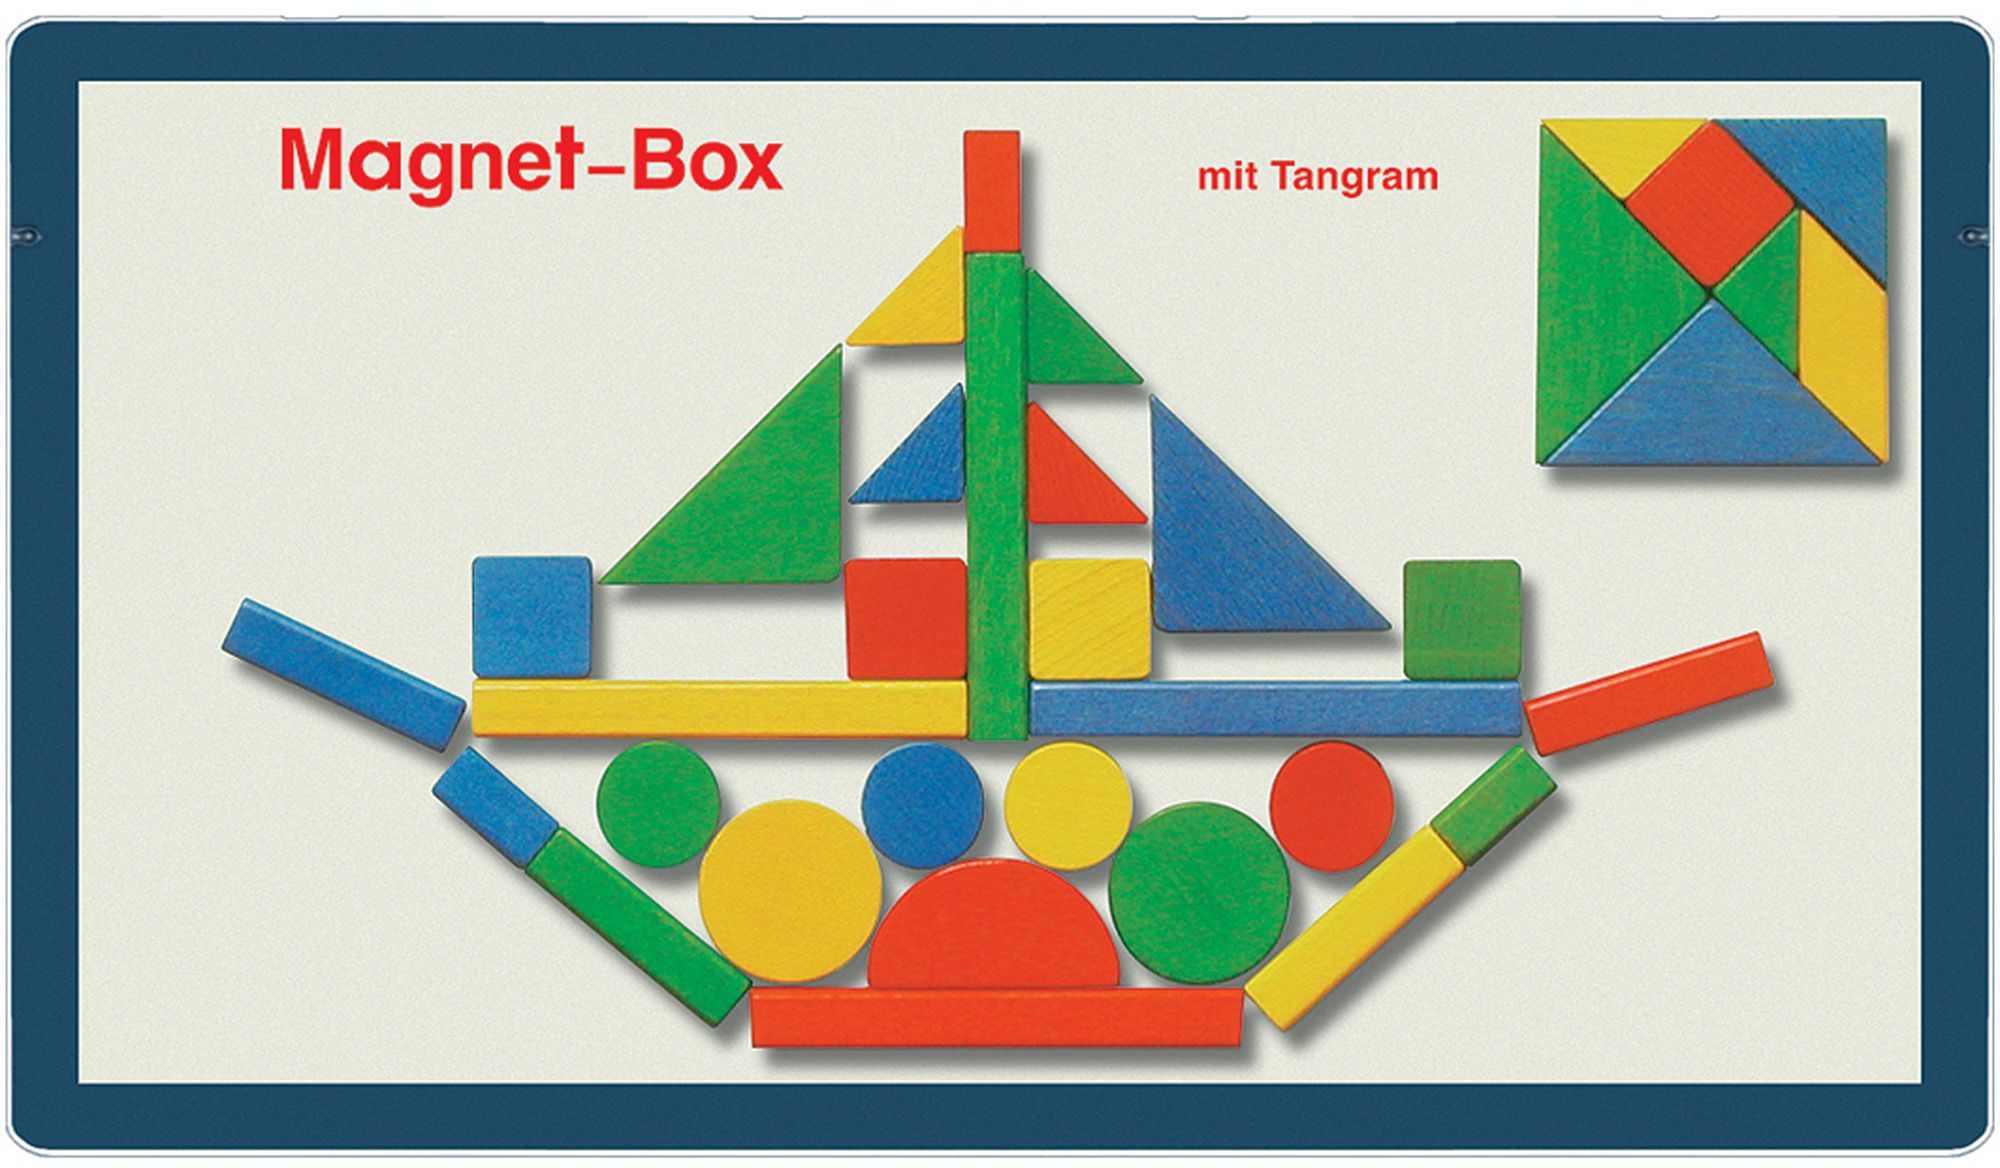 Oberschwäbische Magnetspiele - Tangram Magnetbox' kaufen - Spielwaren